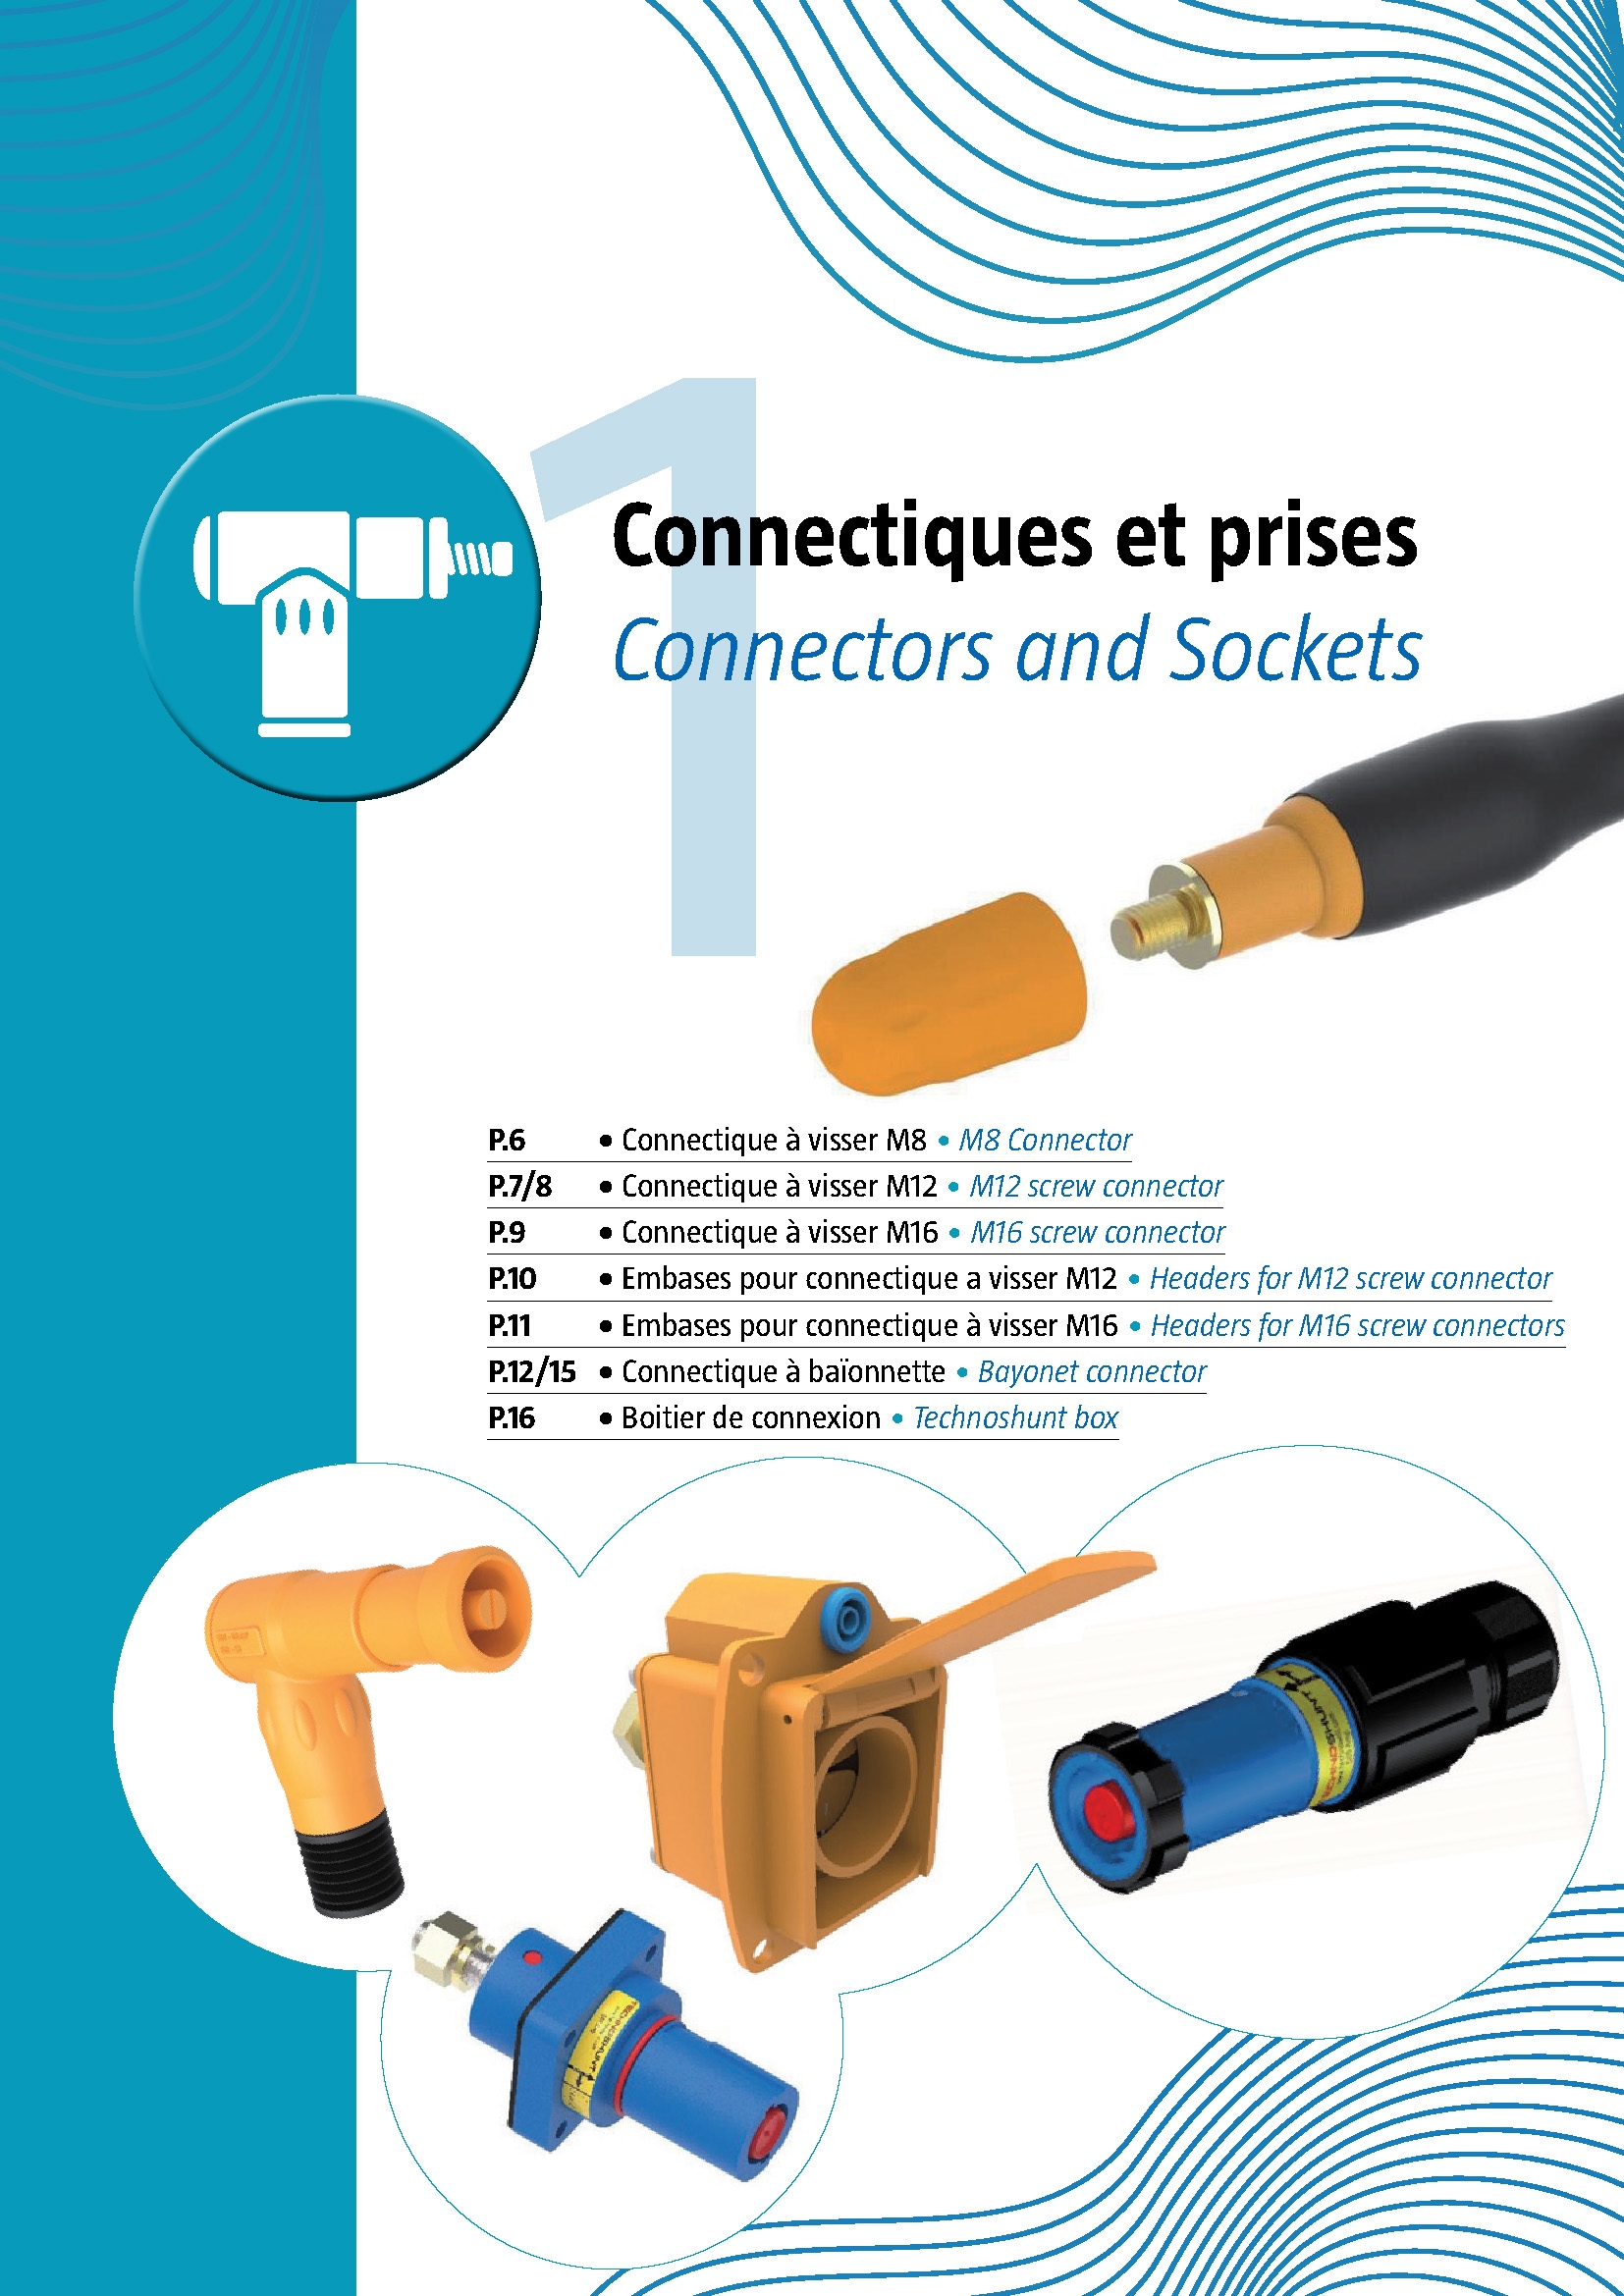 1 Connectors & Sockets